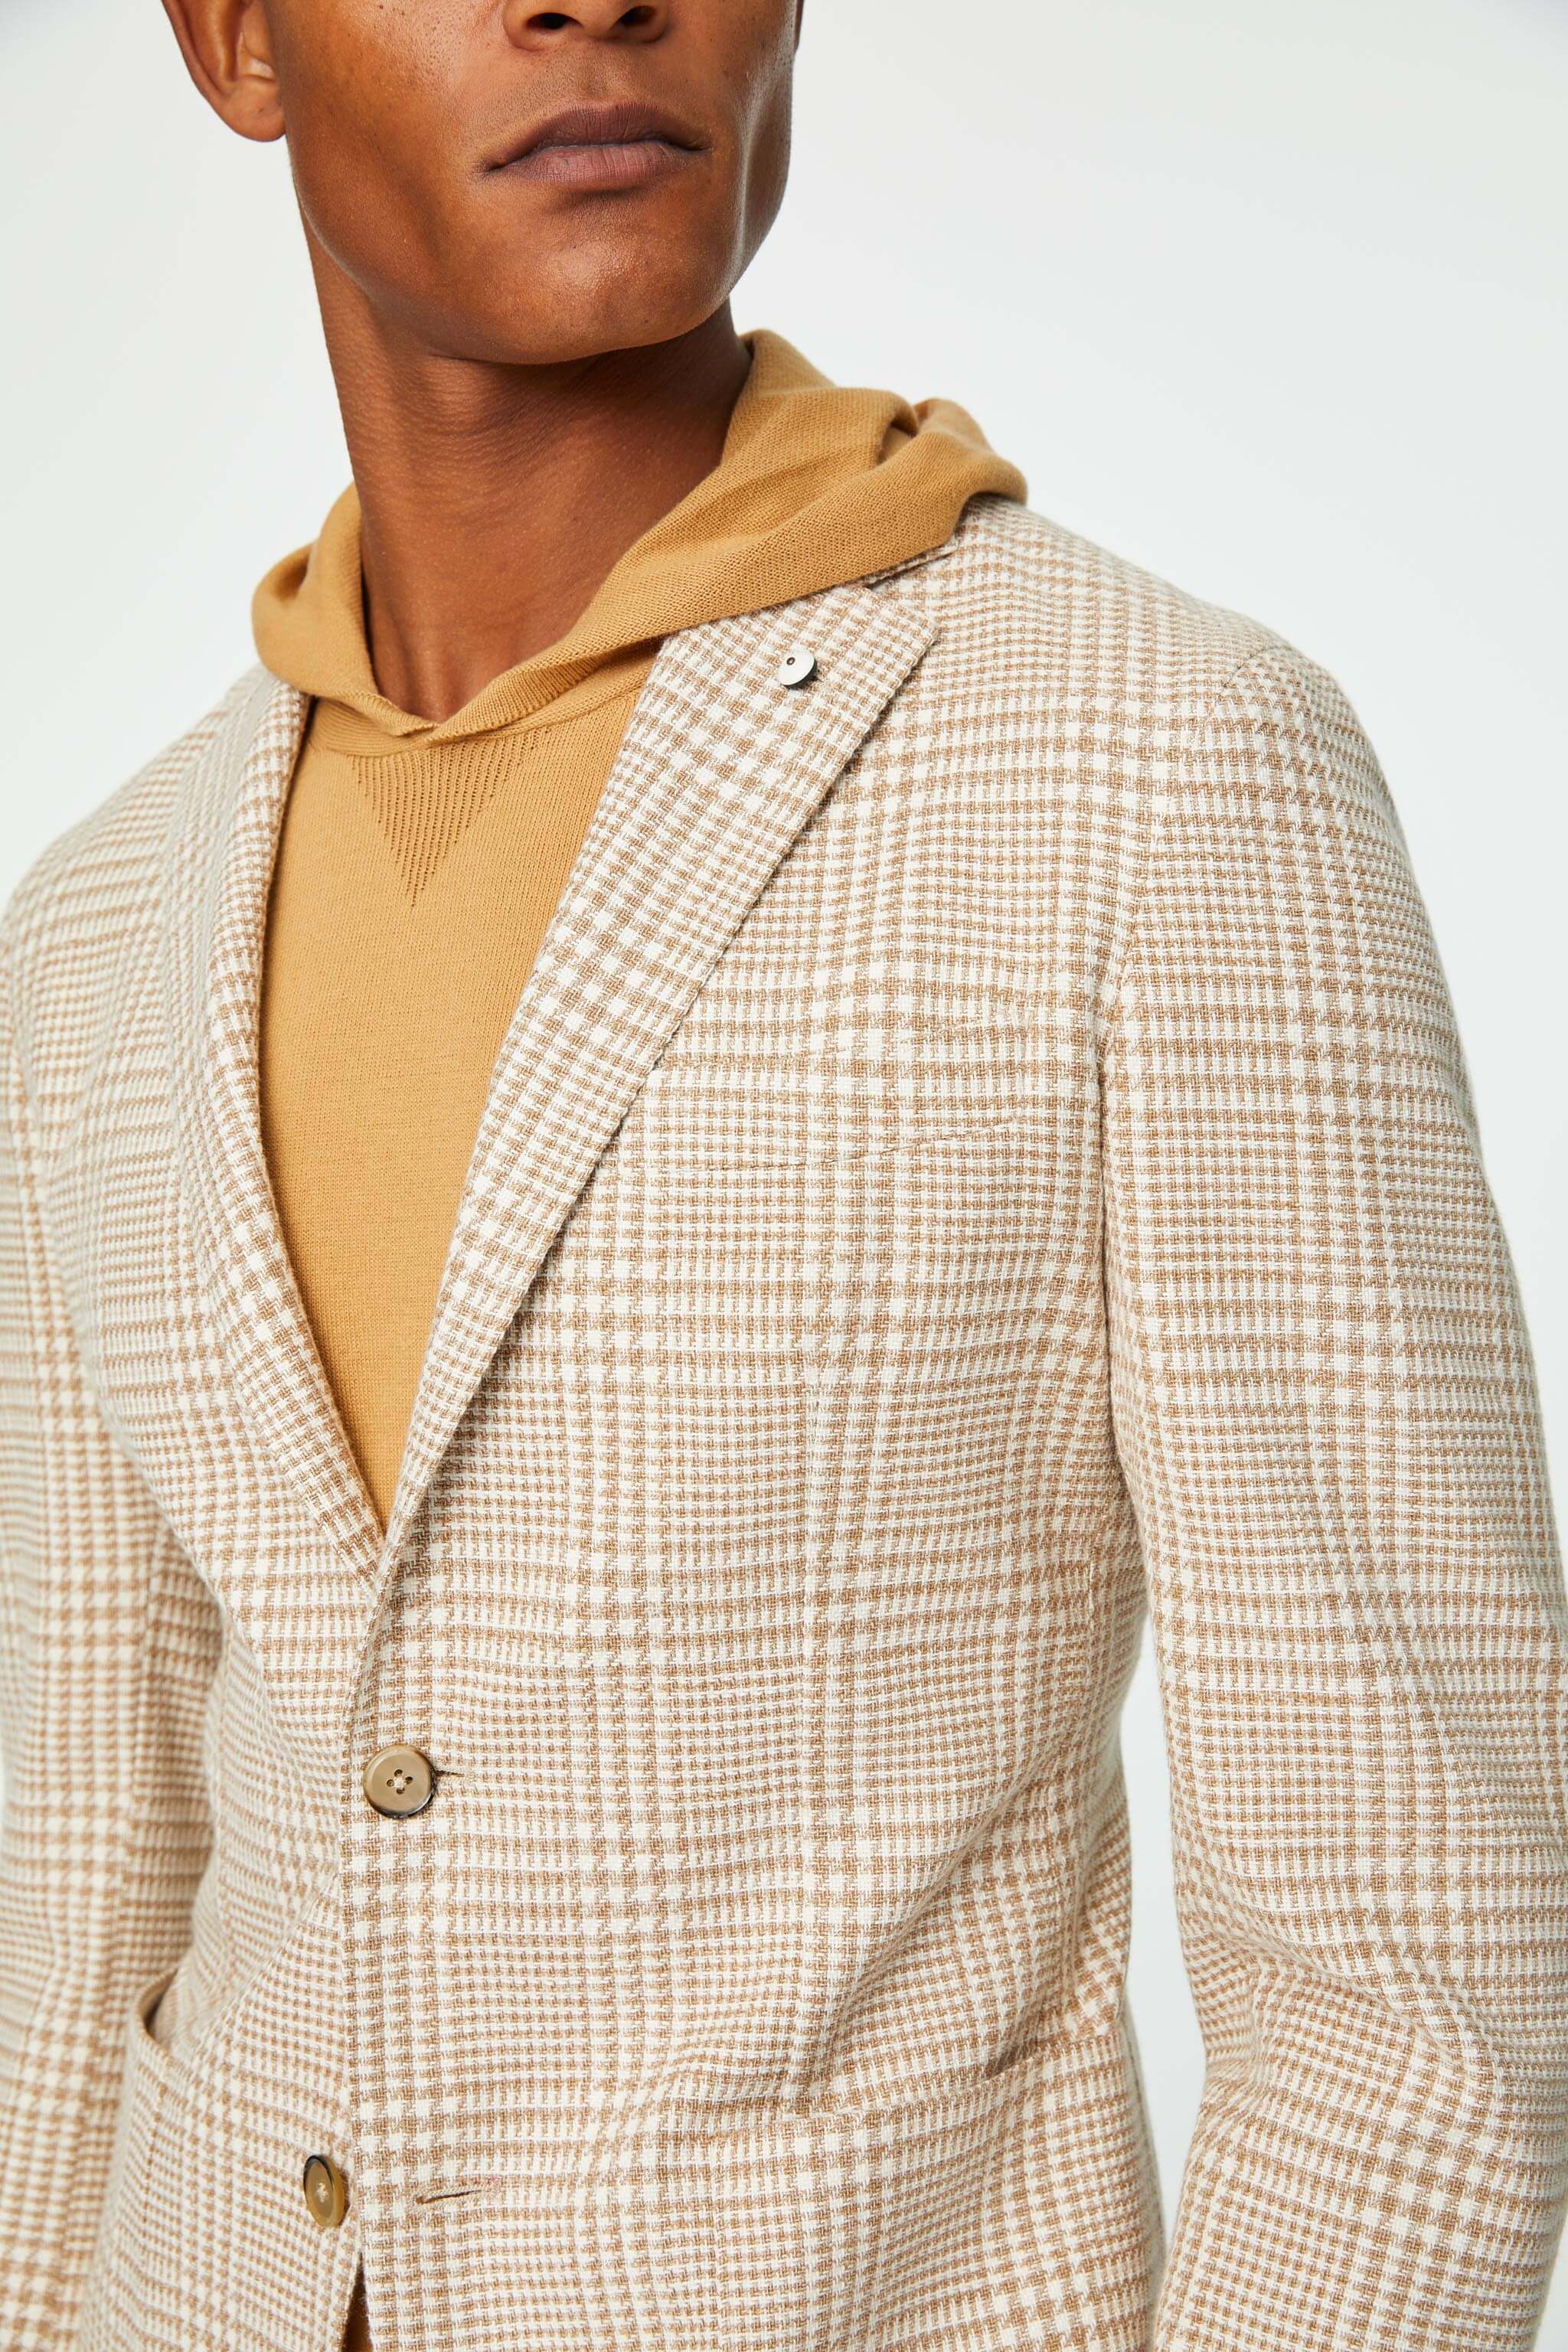 Garment-dyed EDDY jacket in beige